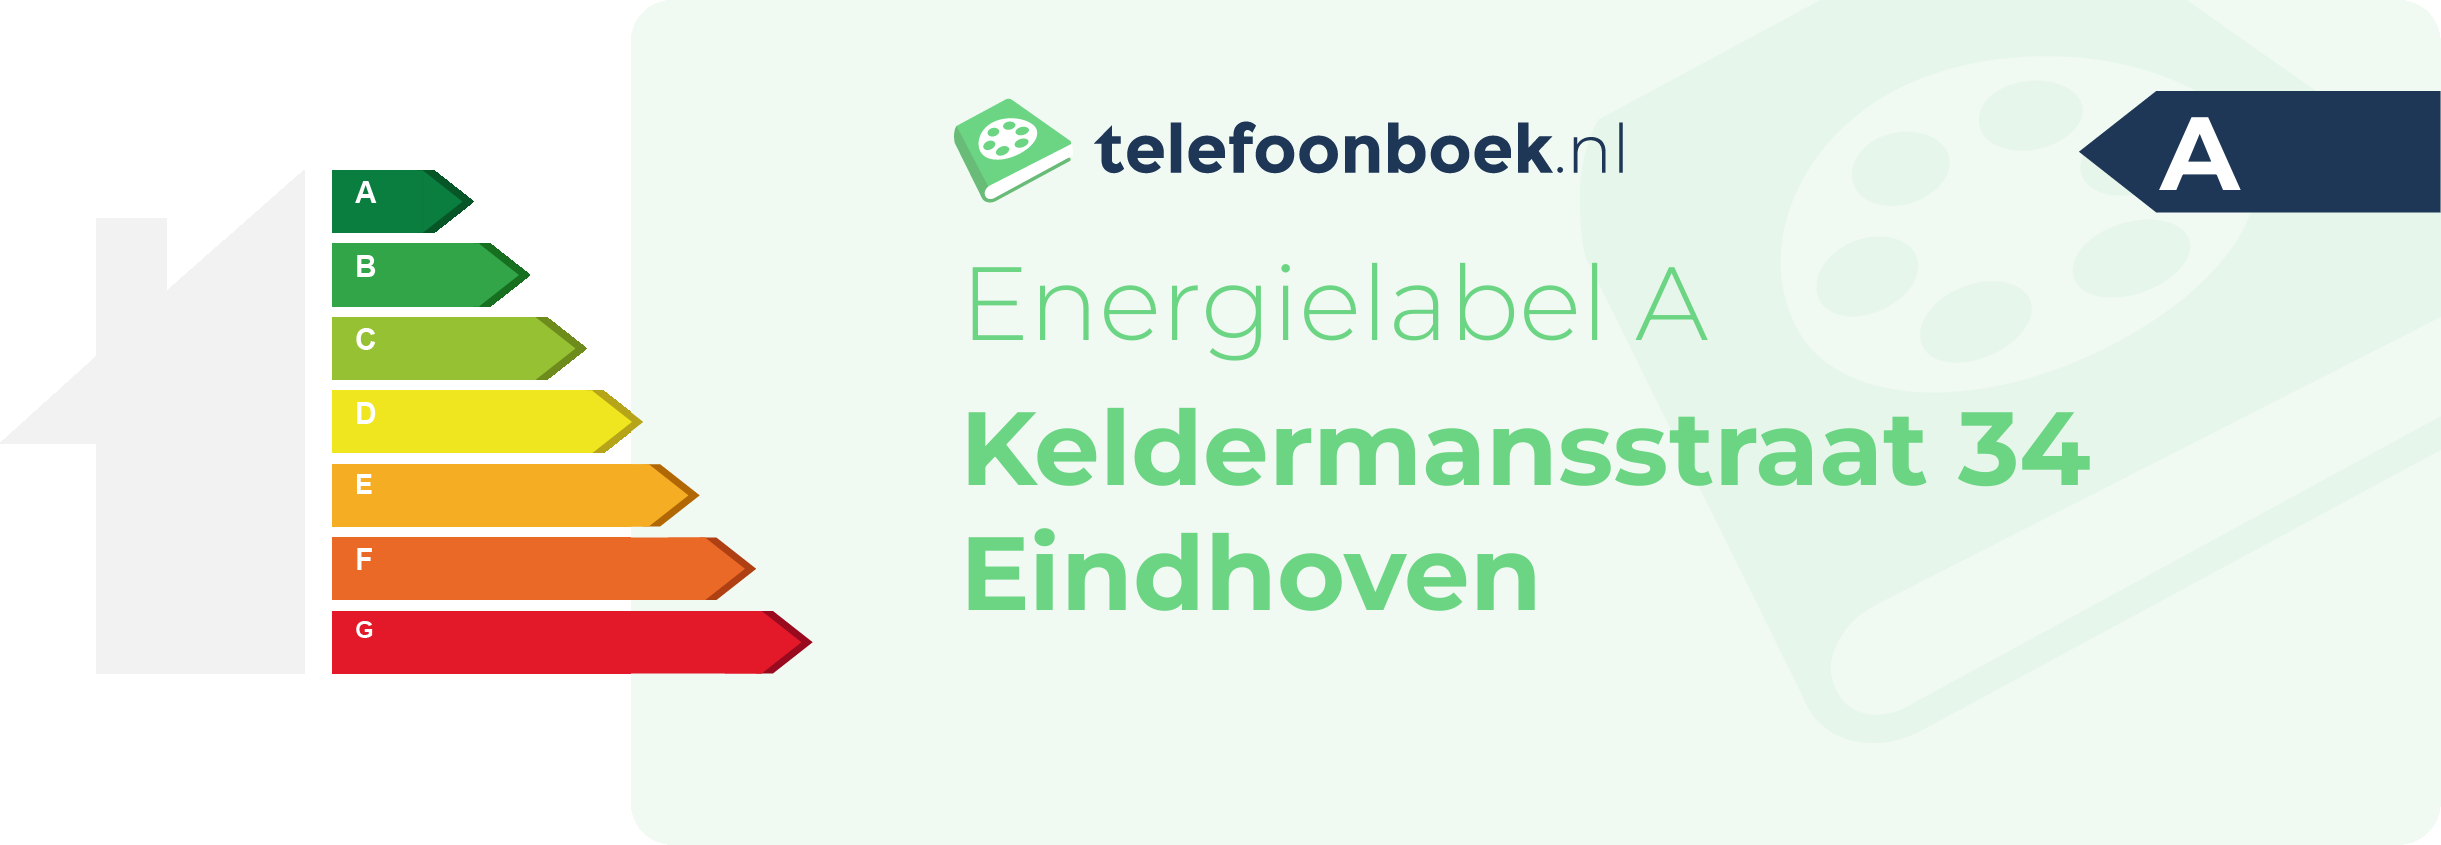 Energielabel Keldermansstraat 34 Eindhoven